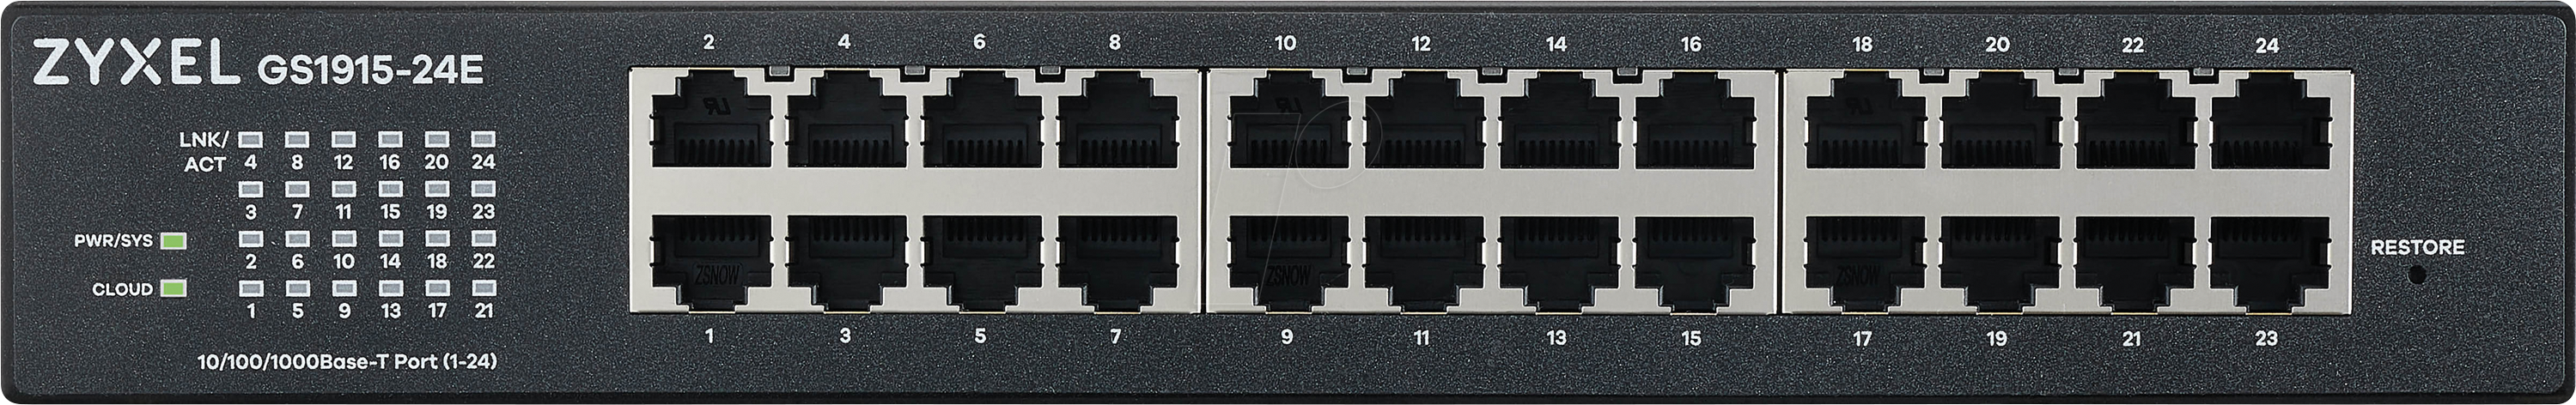 ZyXEL GS1915-24E, 24-port GbEth Smart hybrid mode switch, standalone or Nebulaflex cloud, rackmountable, fanless